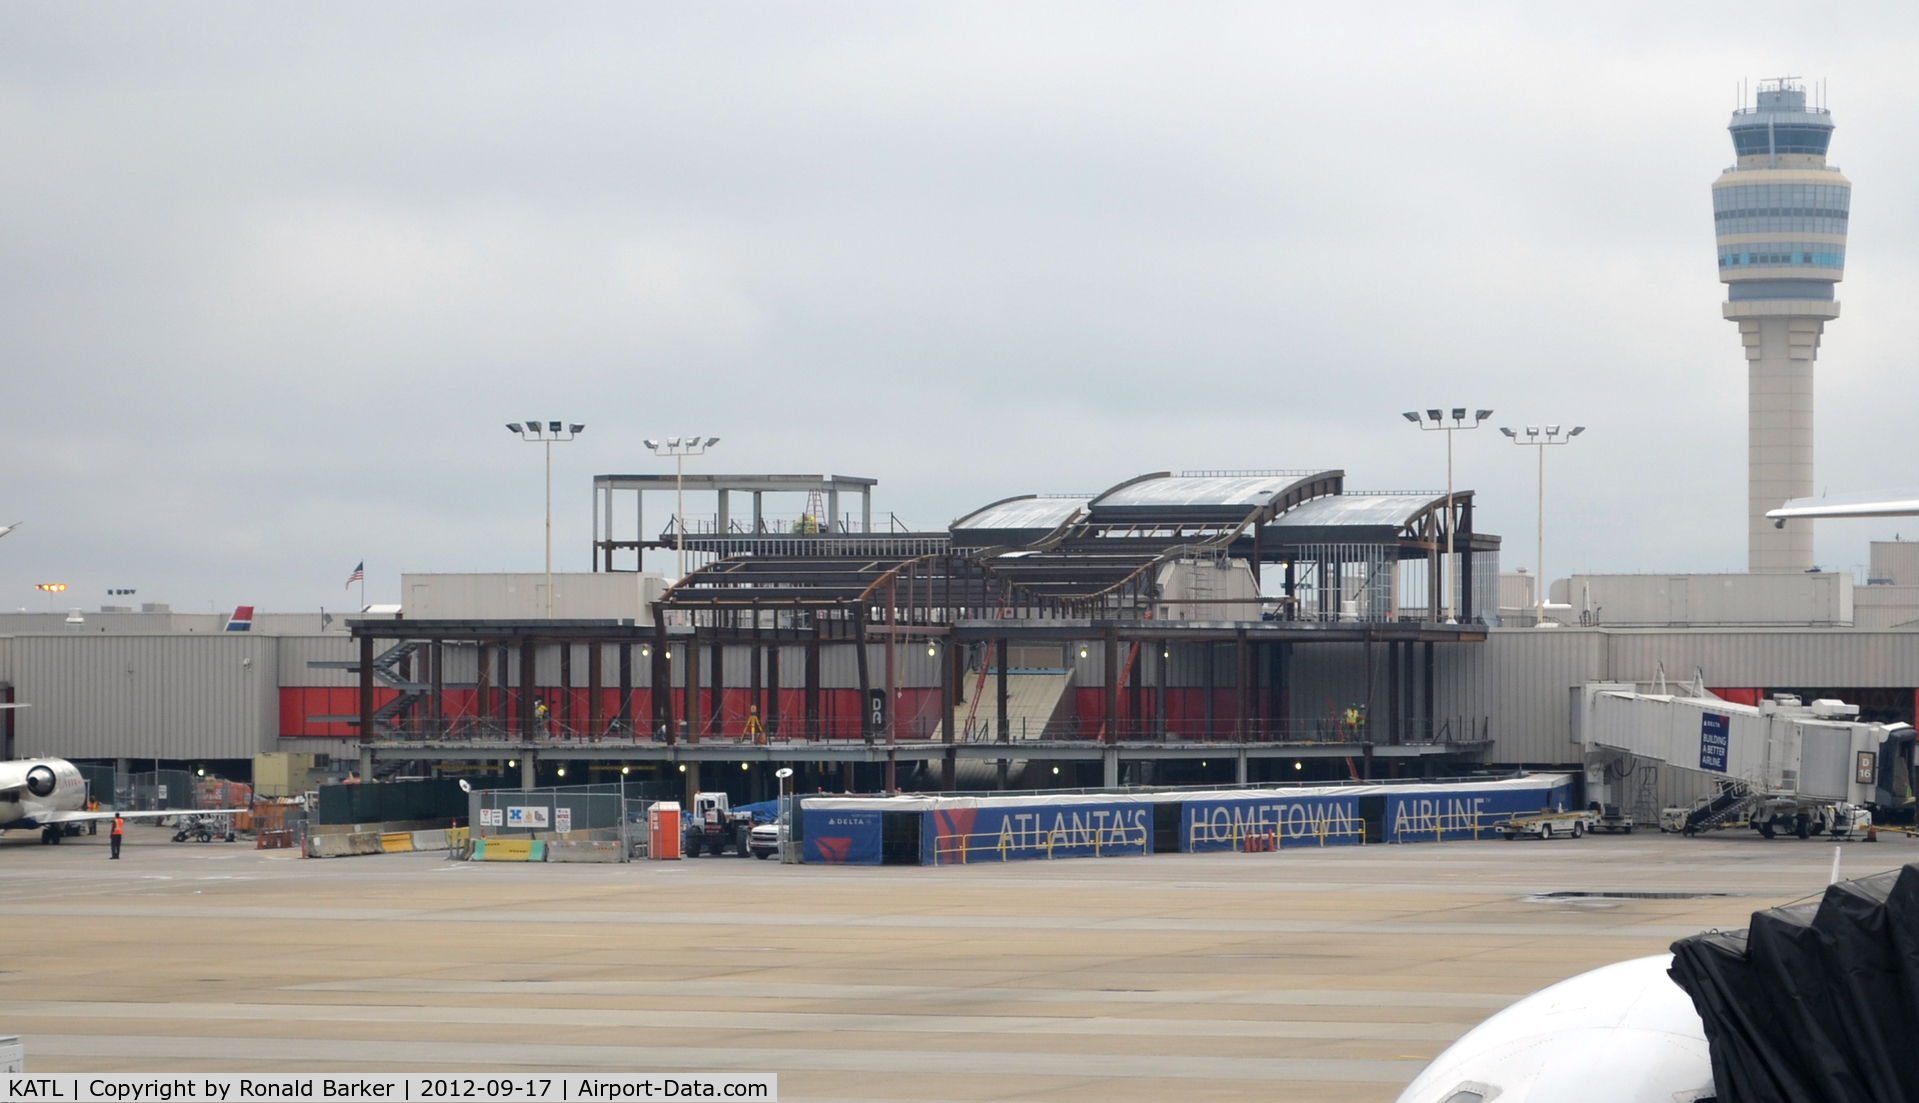 Hartsfield - Jackson Atlanta International Airport (ATL) - Construction at ATL